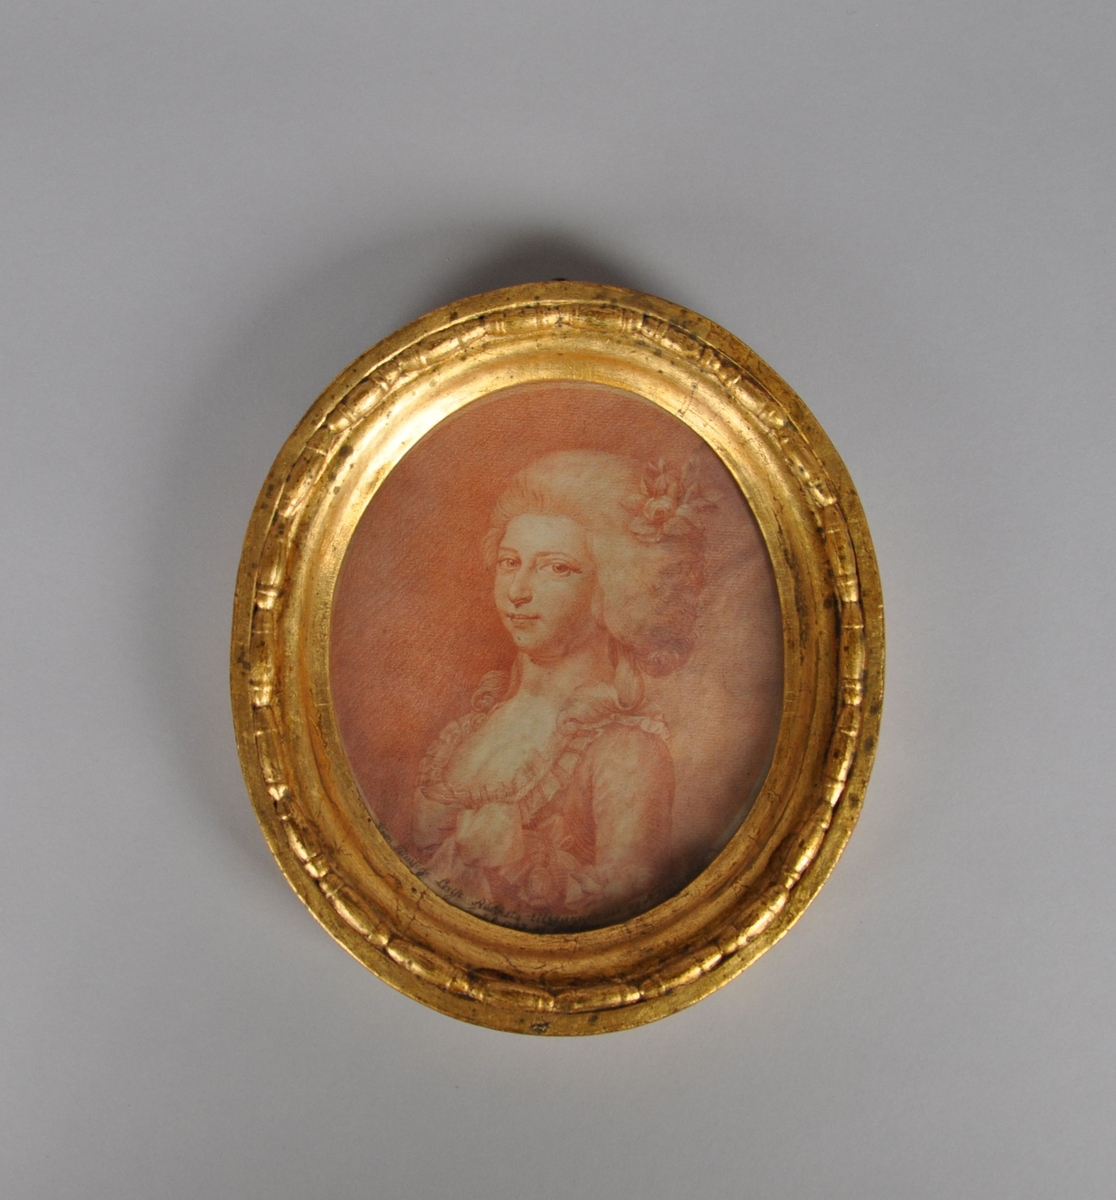 Trykk av jente i barokkjole, med blomsterpryd i håret. Trykket har rødfarge. Stående oval form, med gullbelagt ramme. Portrett av Prinsesse Louise Augusta av Danmark.